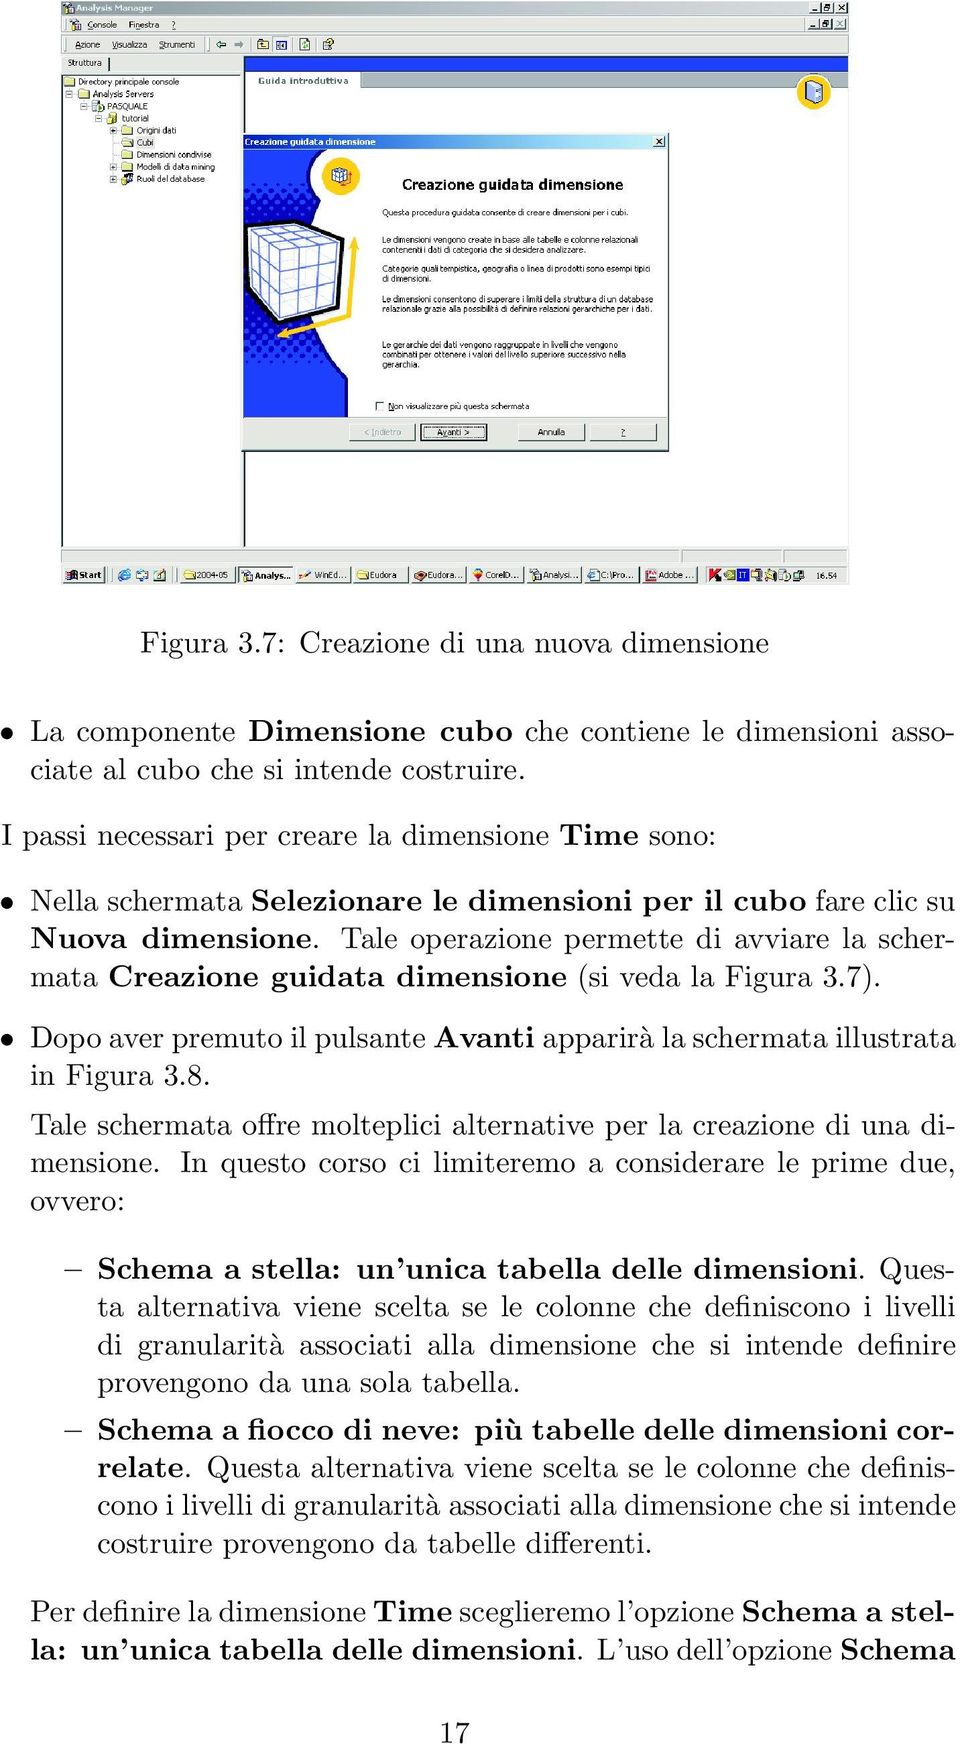 Tale operazione permette di avviare la schermata Creazione guidata dimensione (si veda la Figura 3.7). Dopo aver premuto il pulsante Avanti apparirà la schermata illustrata in Figura 3.8.